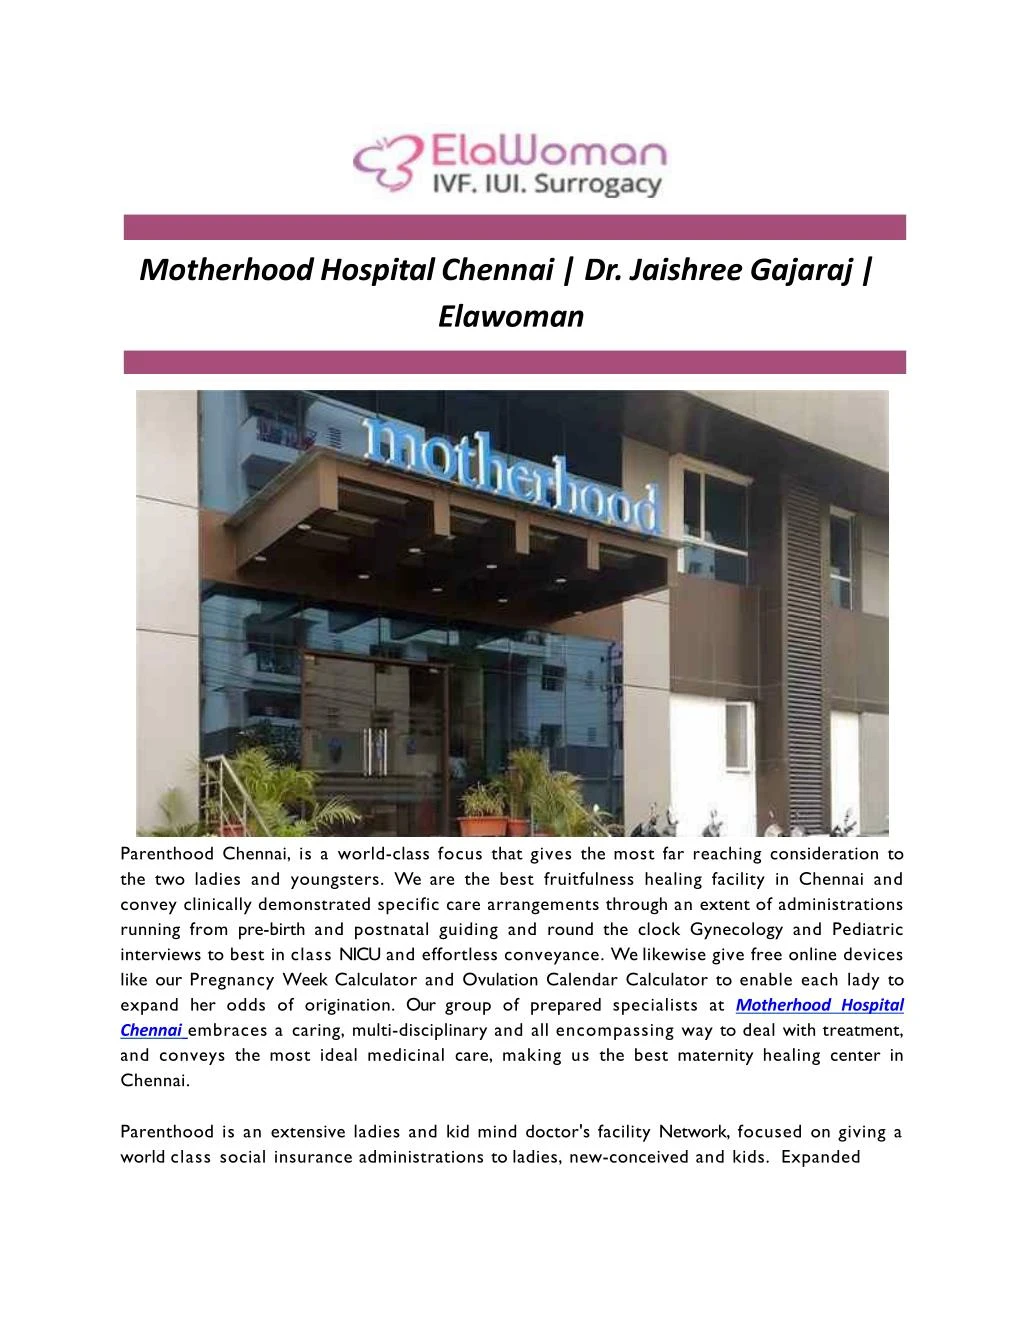 motherhood hospital chennai dr jaishree gajaraj